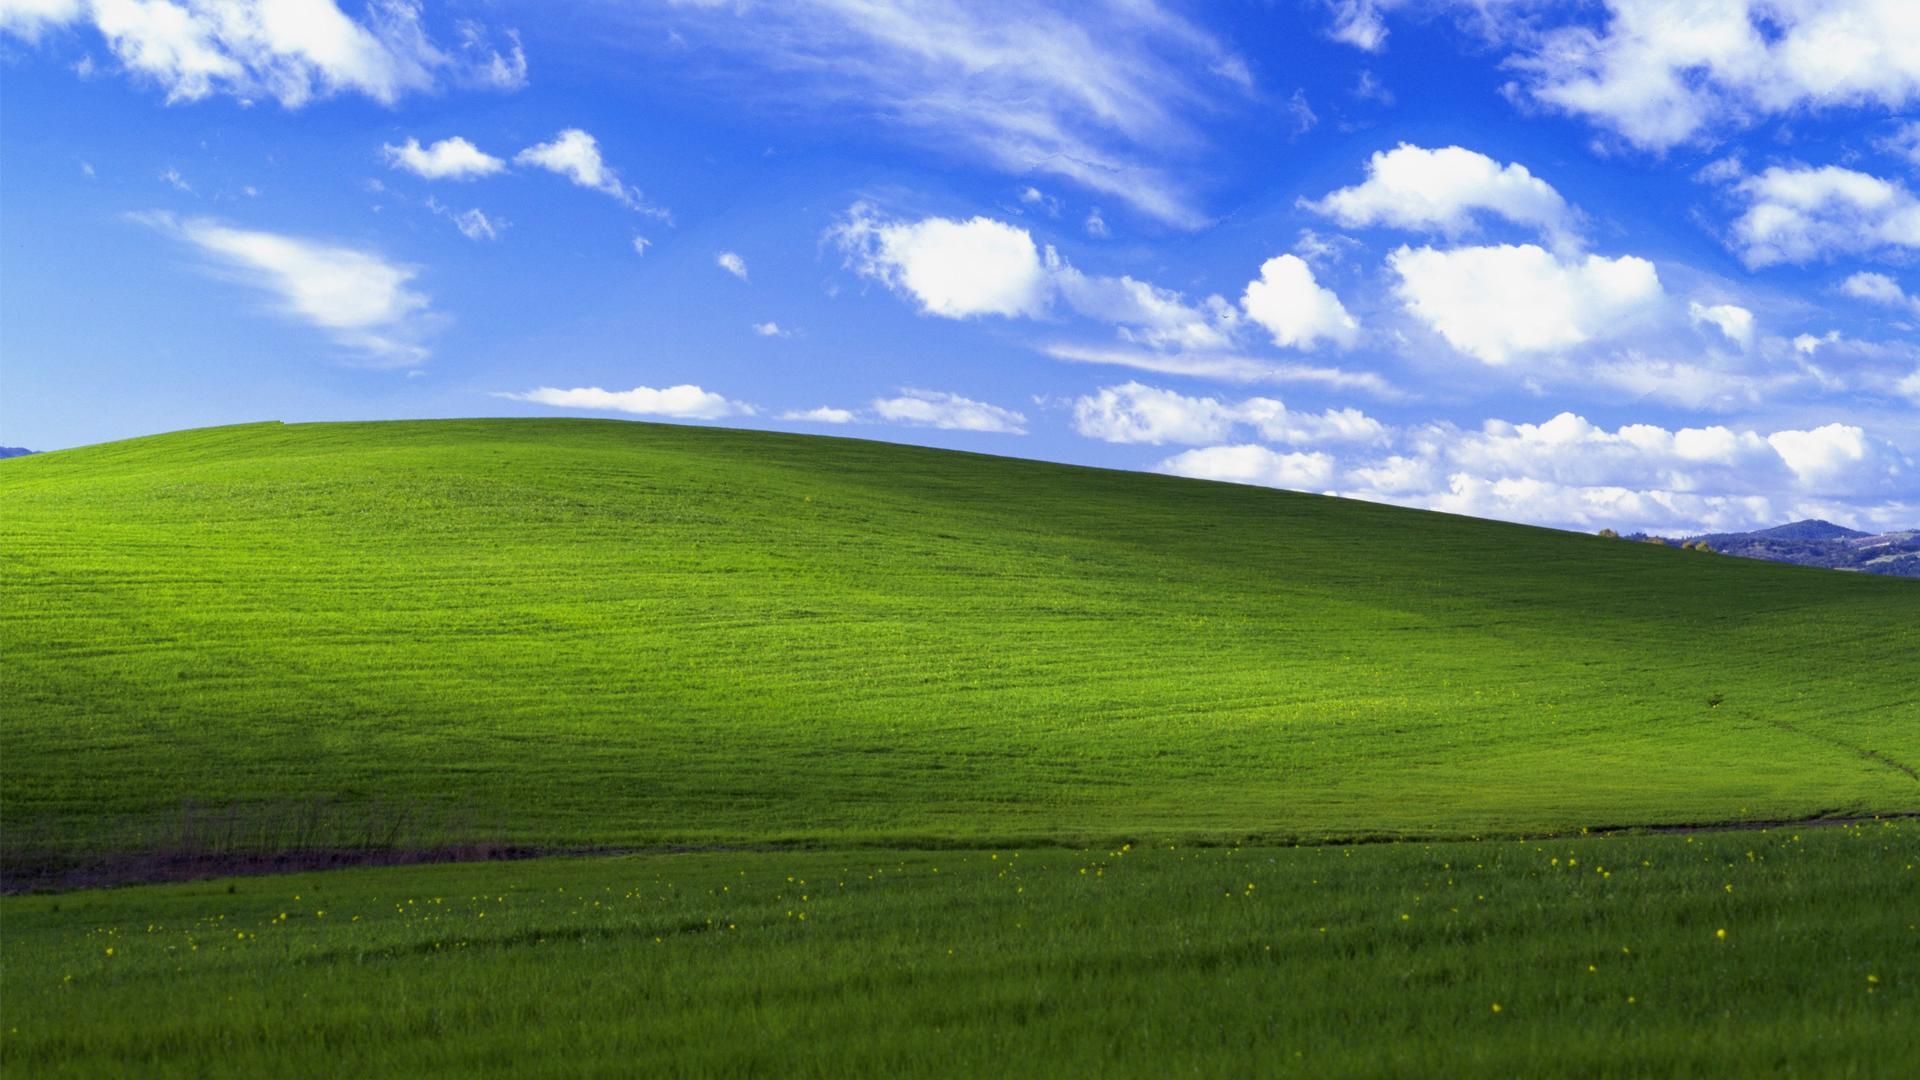 Những kỷ niệm khó quên về Windows XP đã được tái hiện lại trong hình ảnh này. Hãy dành phút giây để nhớ lại thời kỳ đó và cảm nhận sự thăng hoa trong công nghệ đã mang lại.